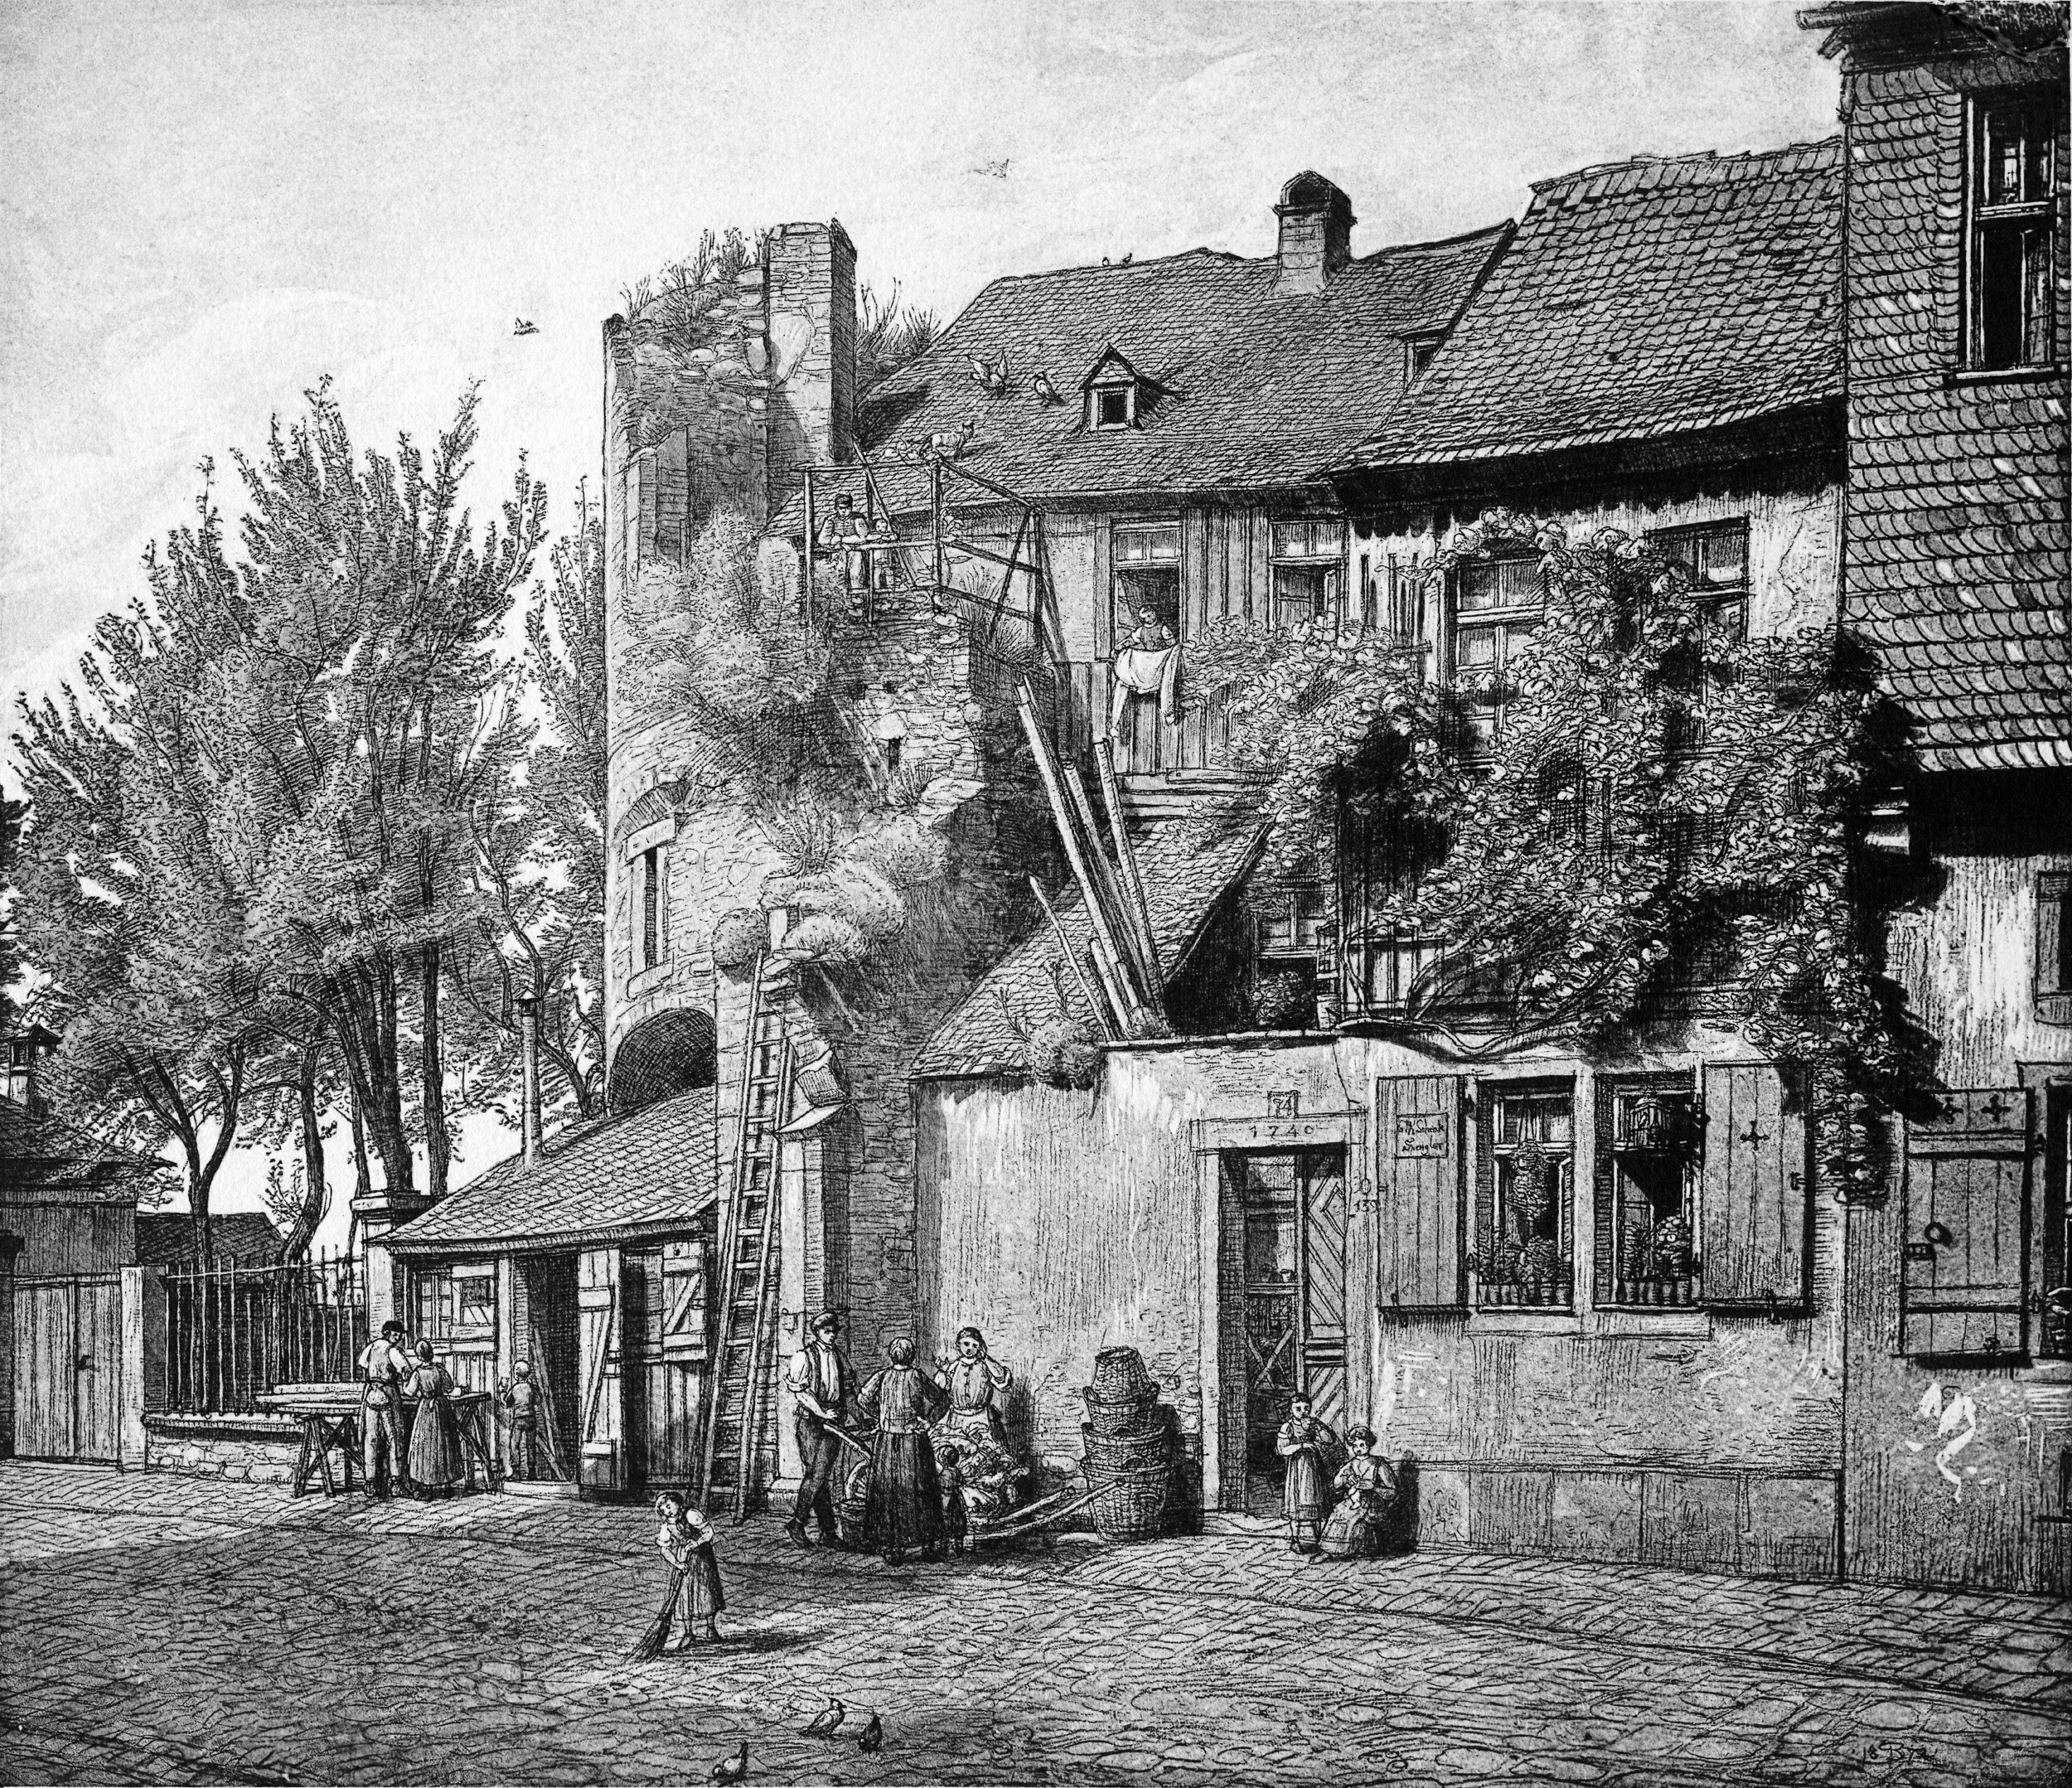 Frankfurt Am Main-Peter Becker-BAAF-023-Die Ruine des Ulrichsteins am Schaumainthor daselbst-1872